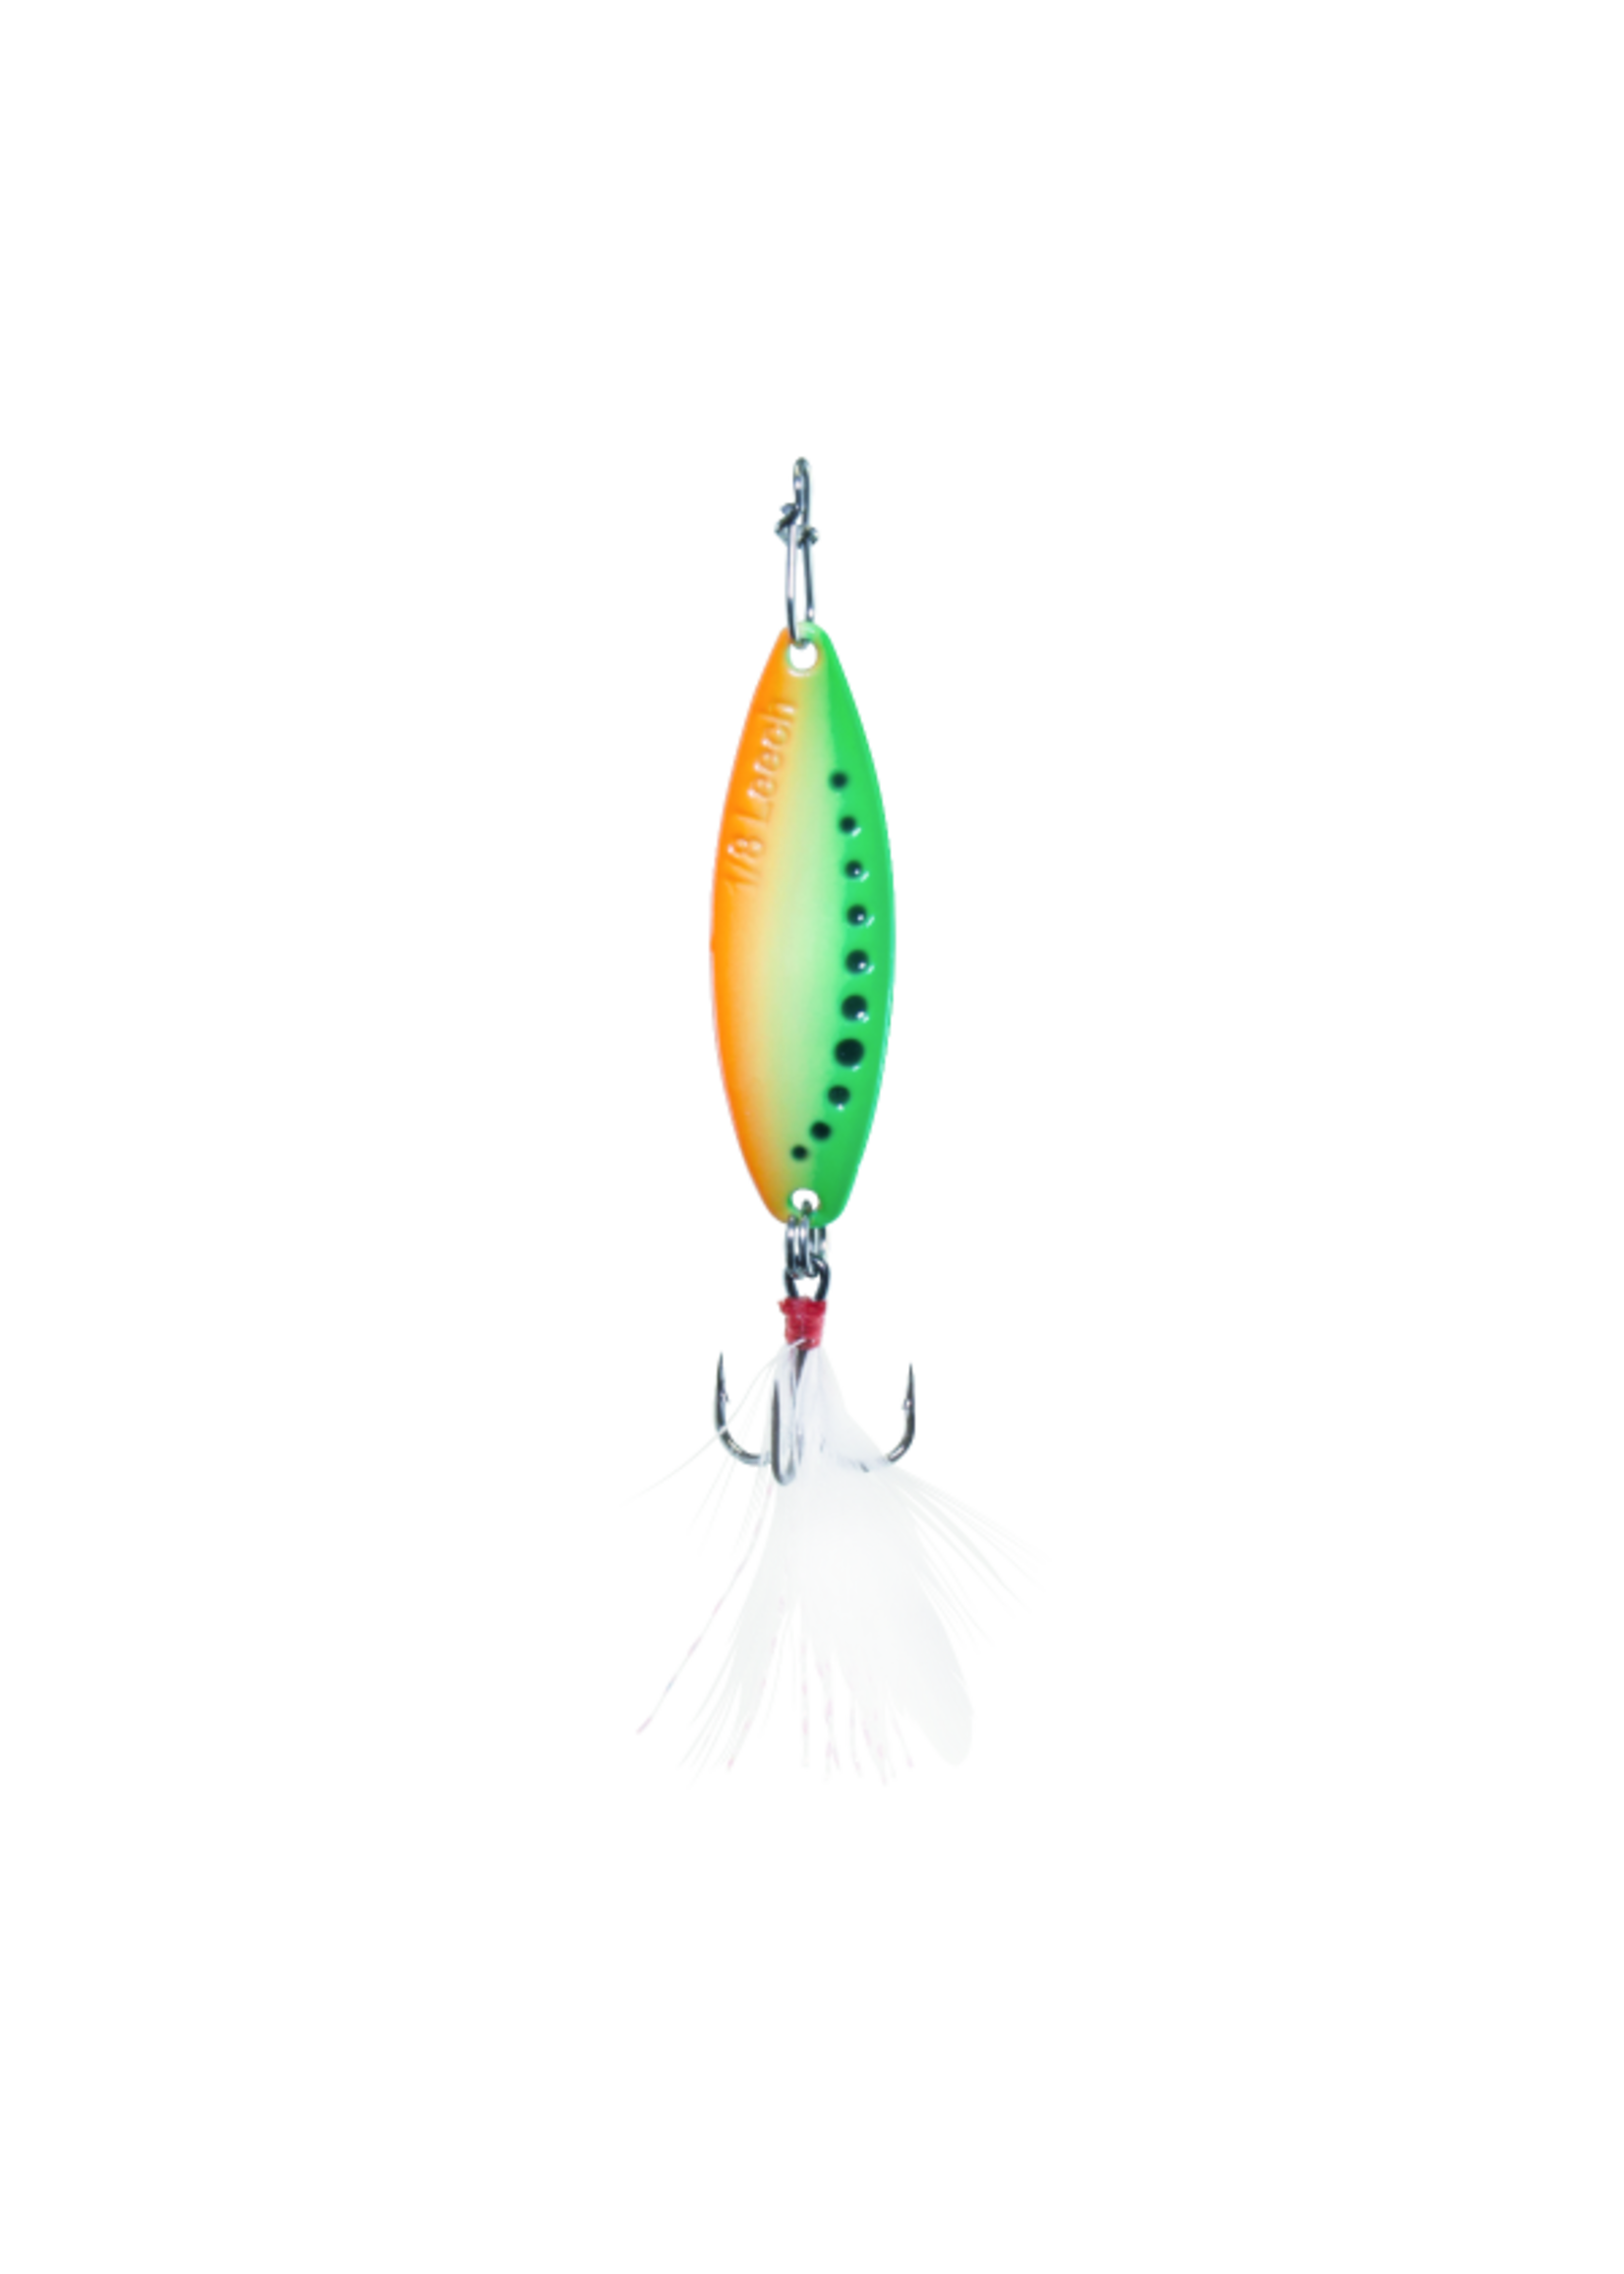 Clam Glow Leech Flutter Spoon Kit